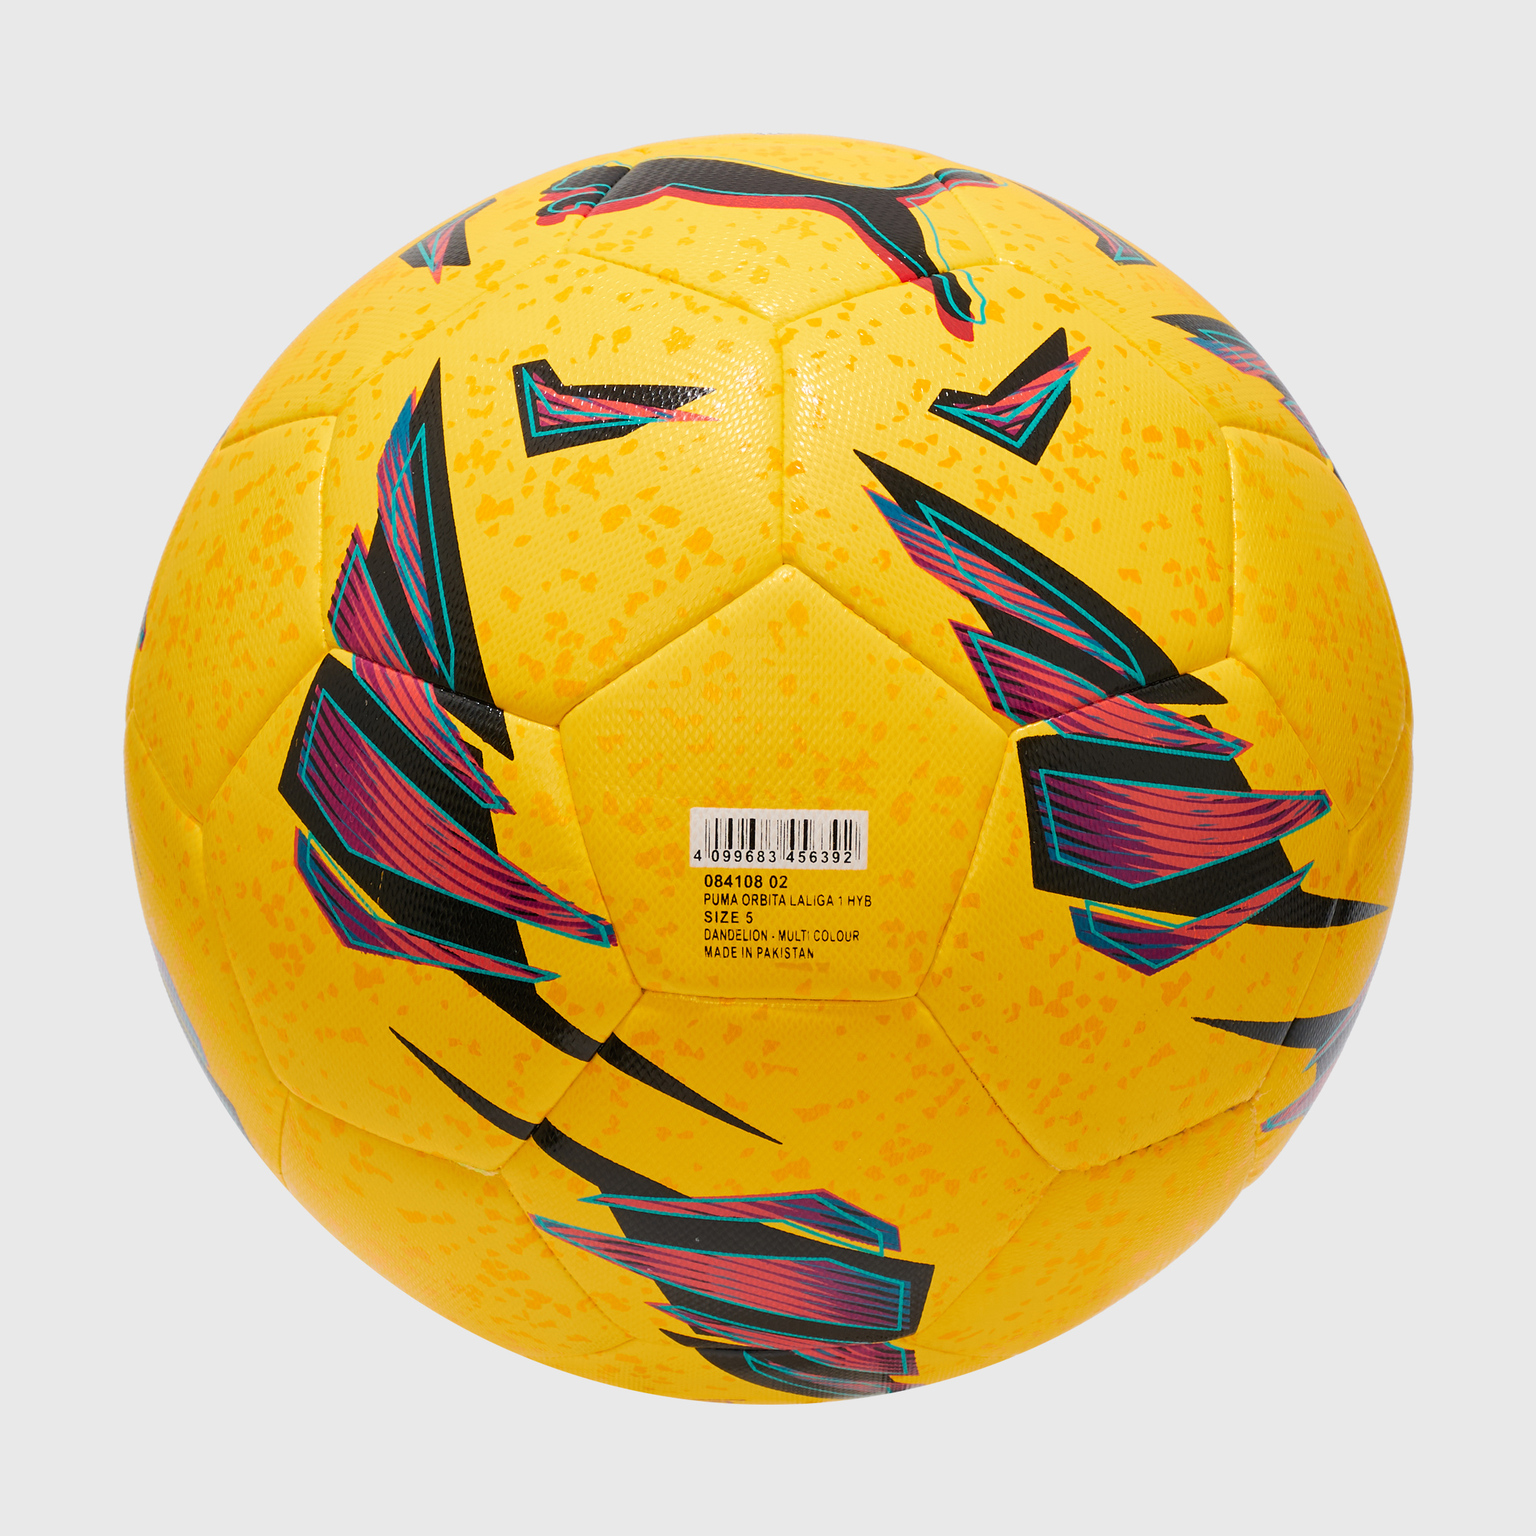 Футбольный мяч Puma Orbita Laliga 1 08410802